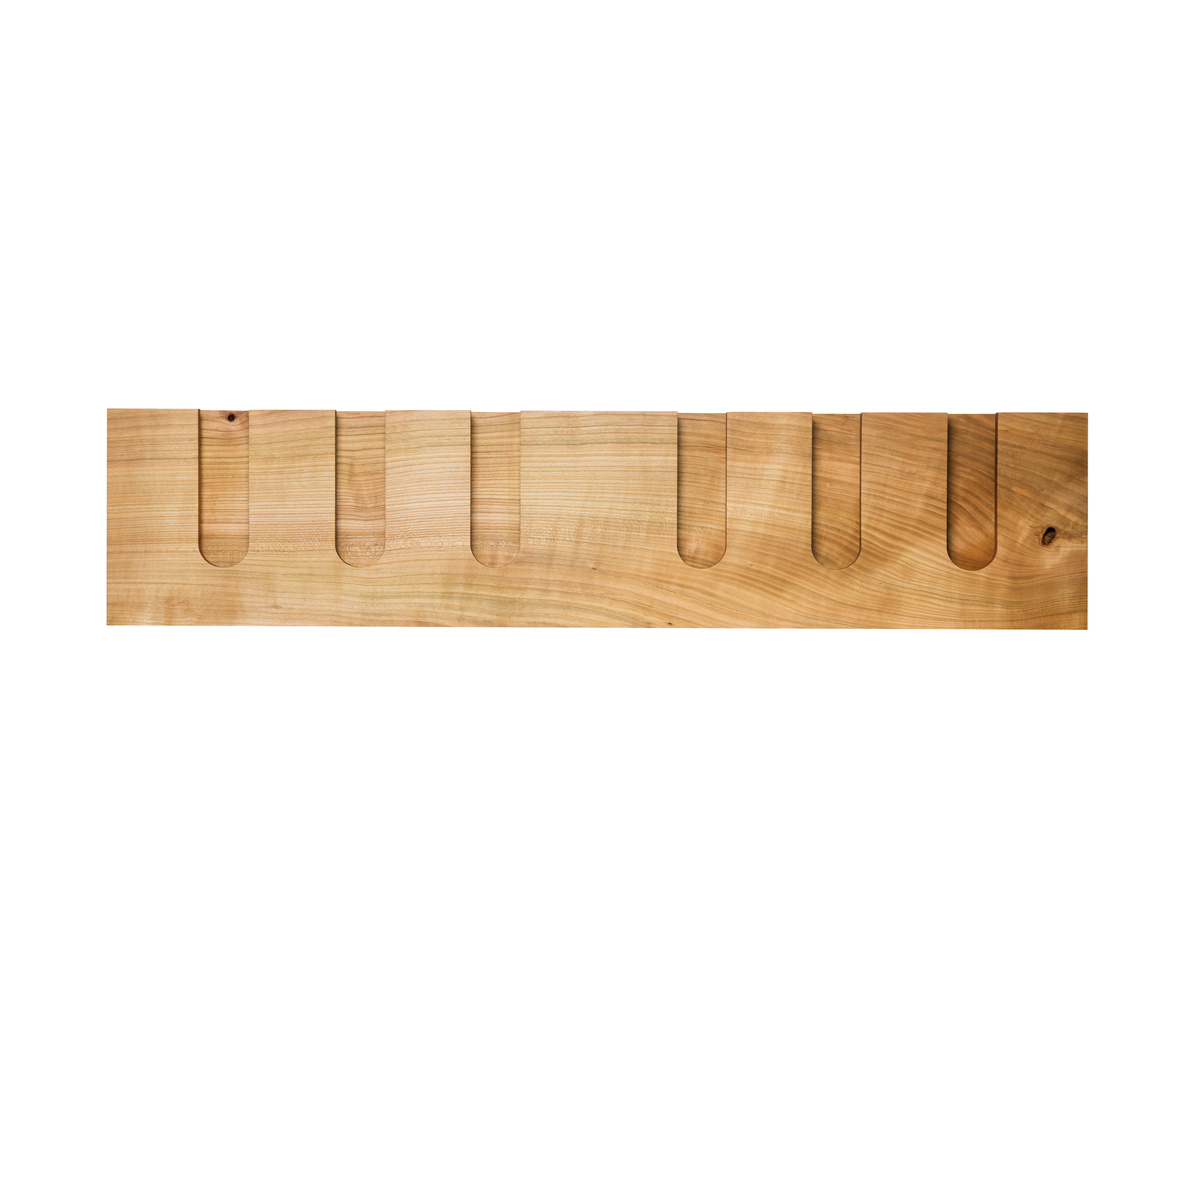 Półka na kieliszki MODEL B12, jeden blok drewna, czereśnia